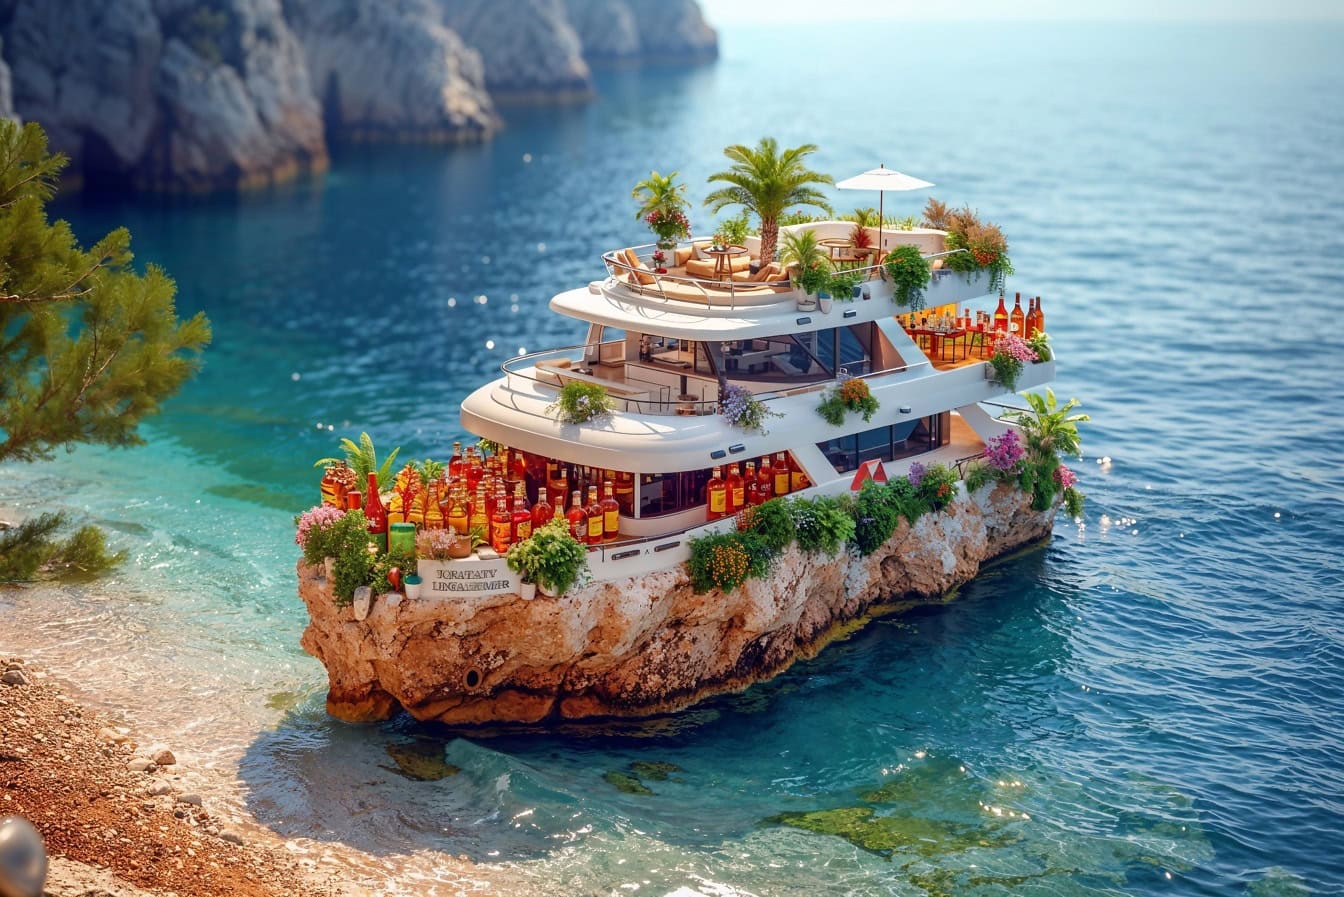 Интересный фотомонтаж миниатюрной яхты с множеством бутылок напитков на небольшом каменном острове